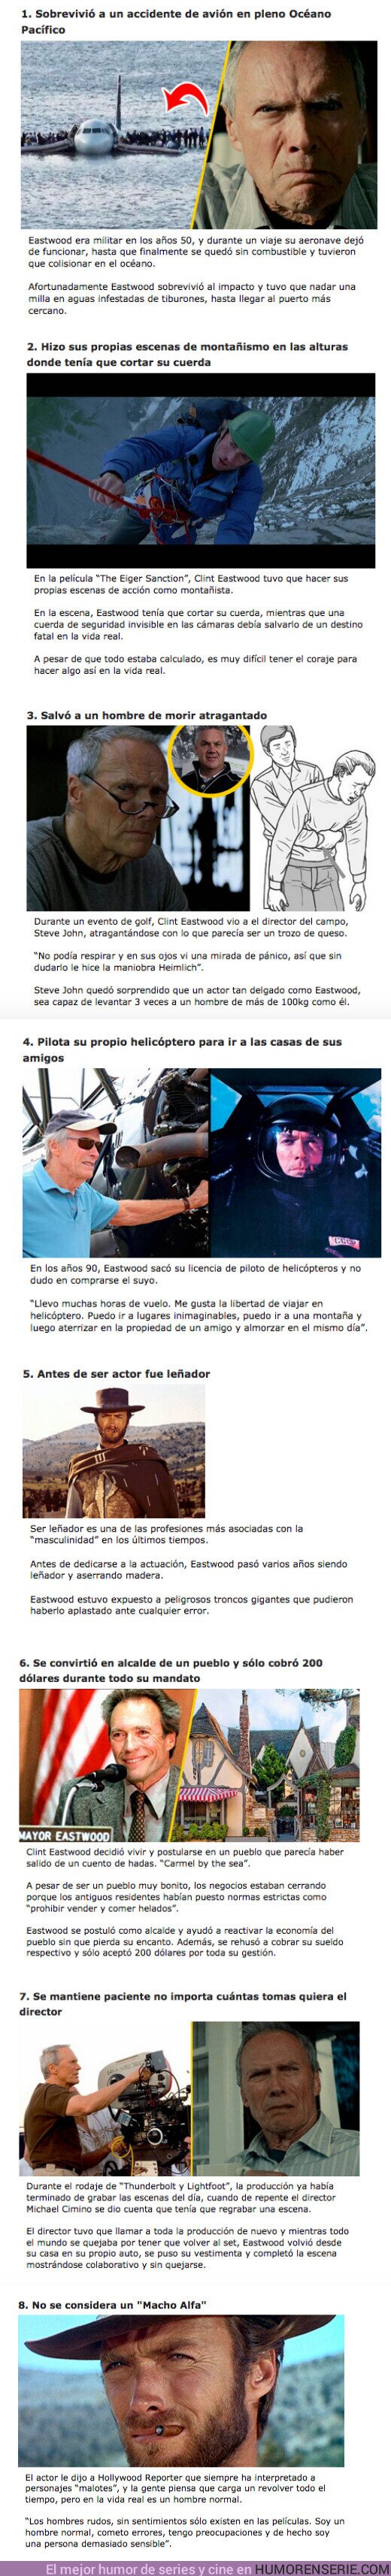 69971 - GALERÍA: 8 Razones por las que Clint Eastwood es considerado el hombre más “macho” de Hollywood